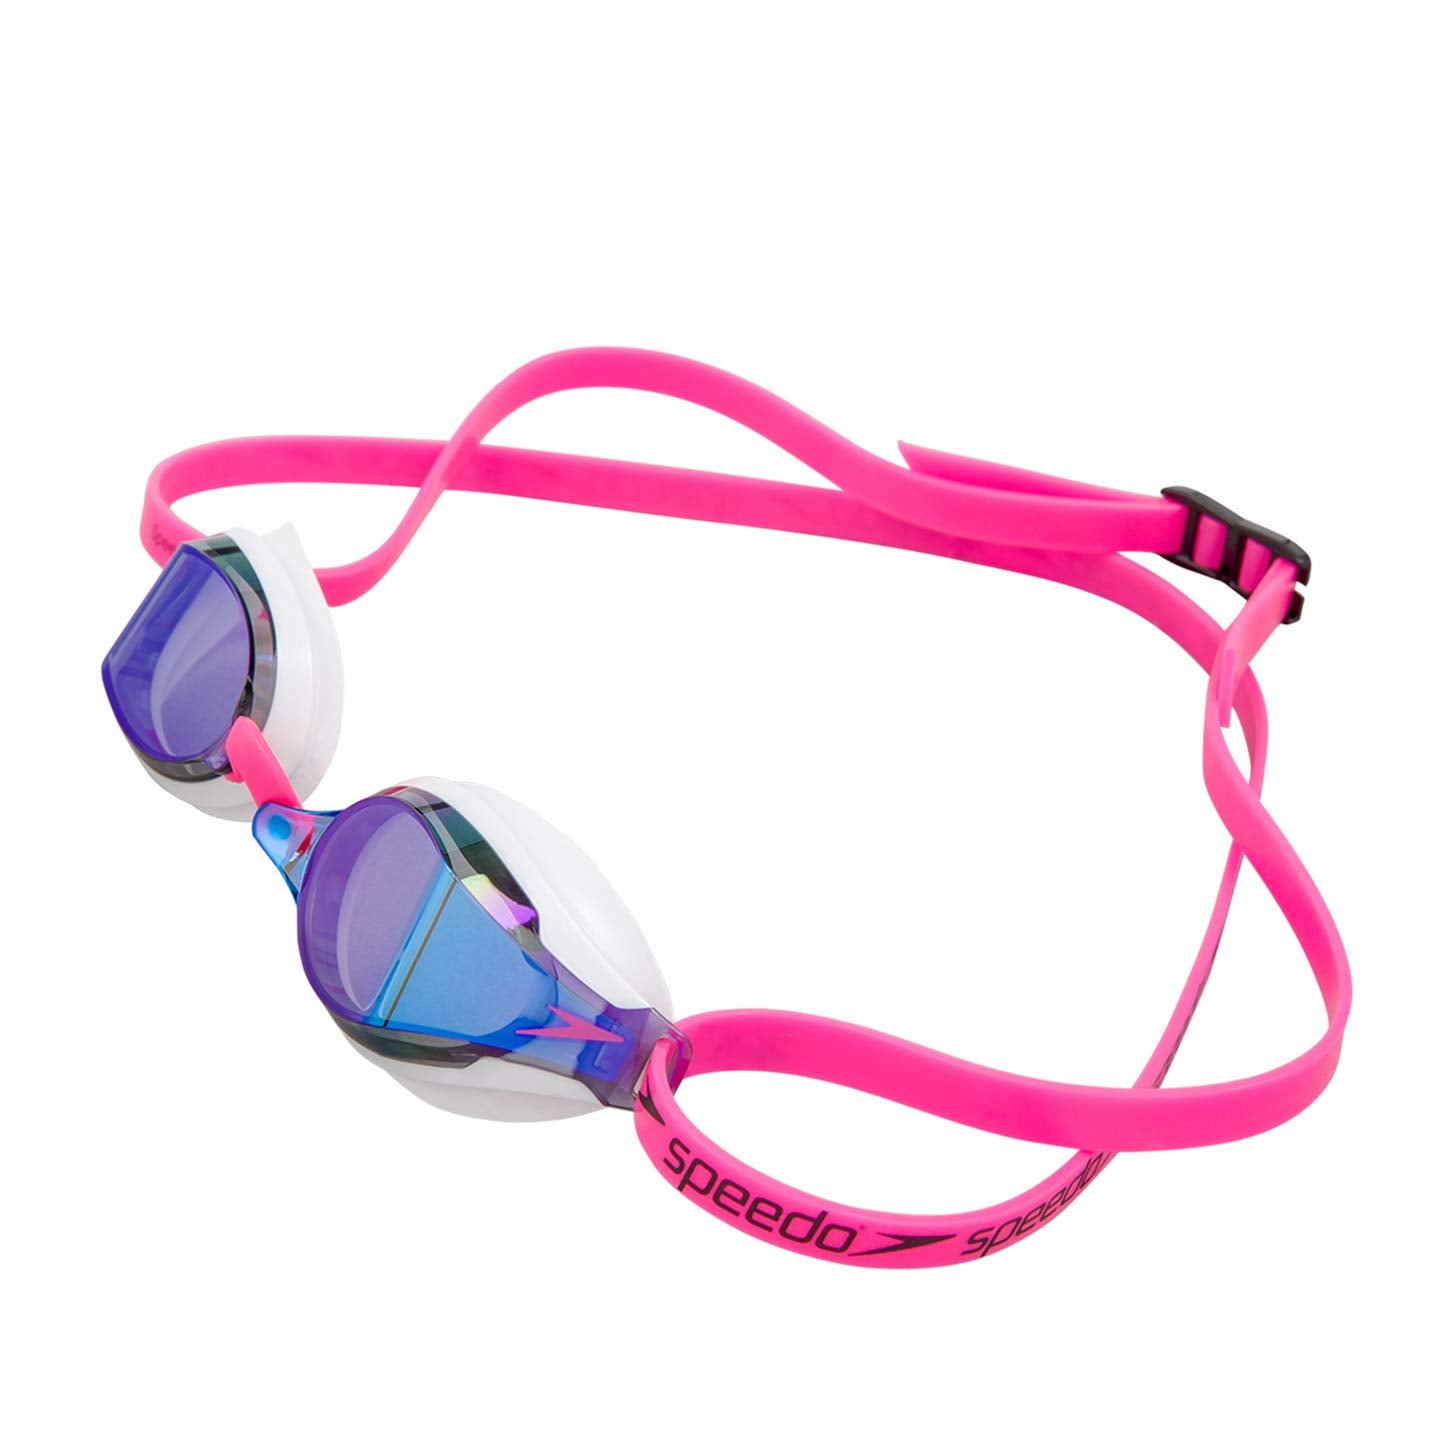 Speedo SpeedSocket 2 Mirror Goggle - Pink/Blue - Best Price online Prokicksports.com